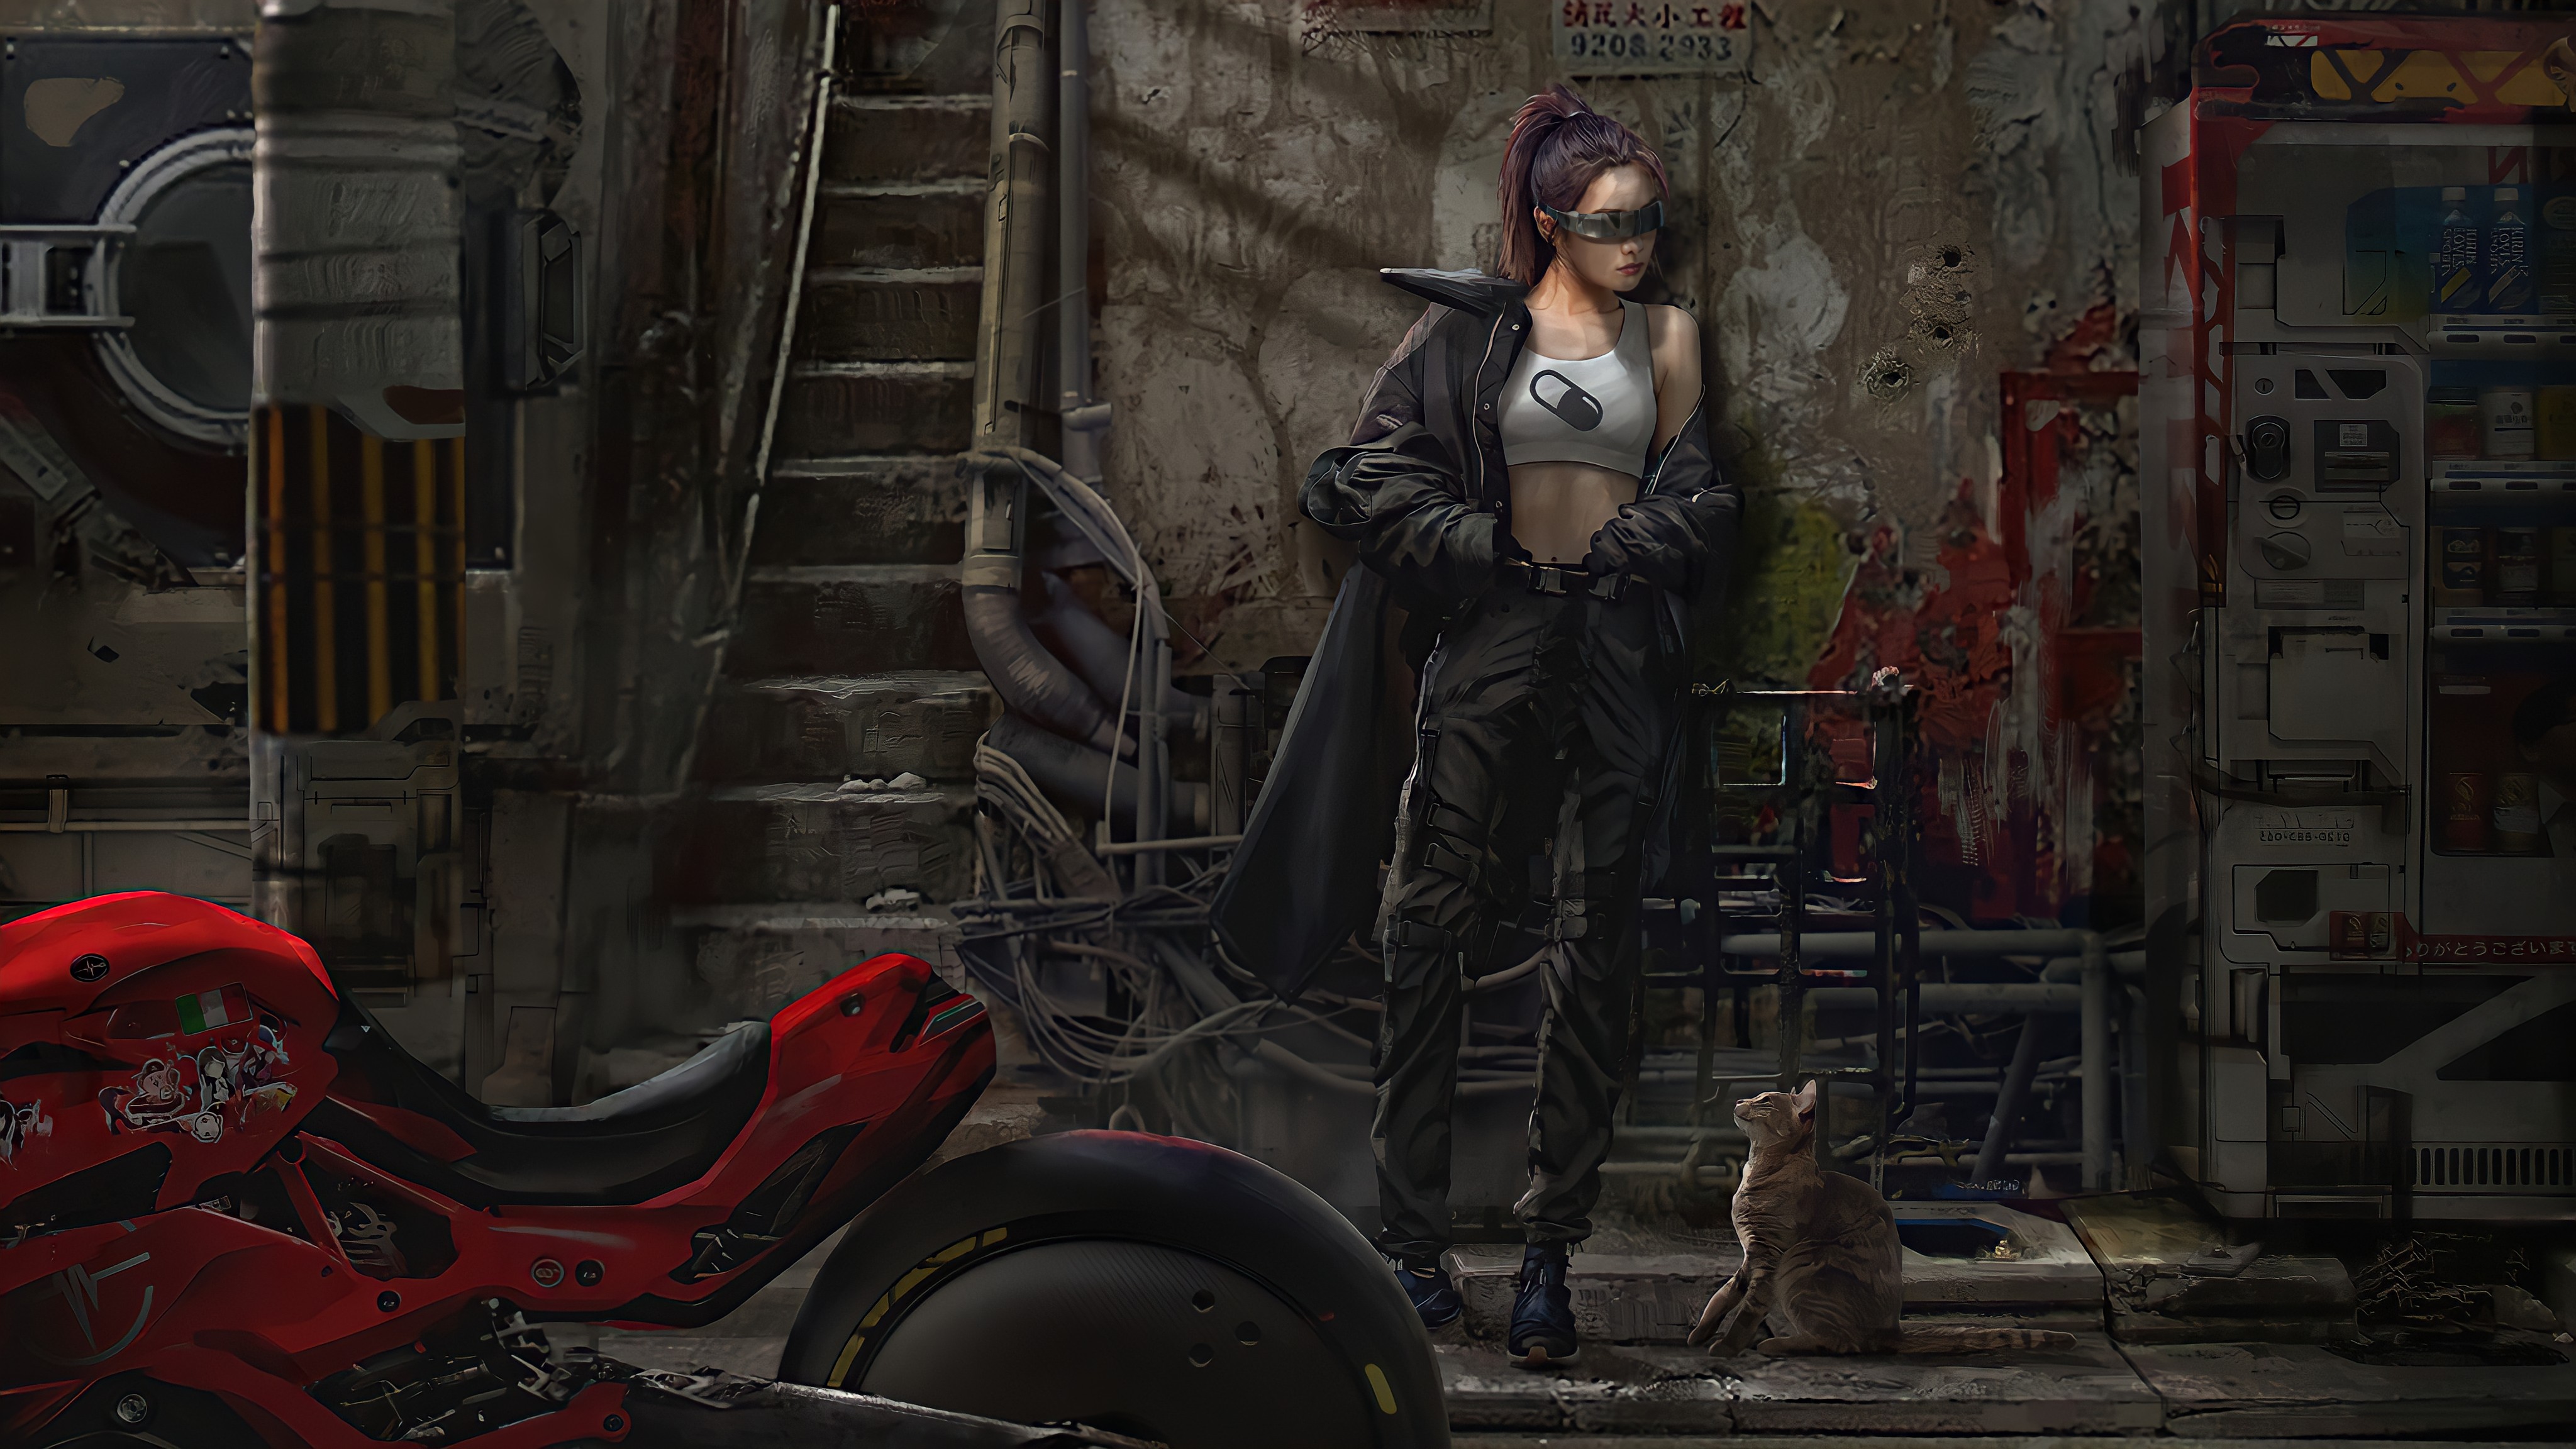 Biker Girl Cat Girl Sci Fi Cyber Red Glass Design 4096x2304